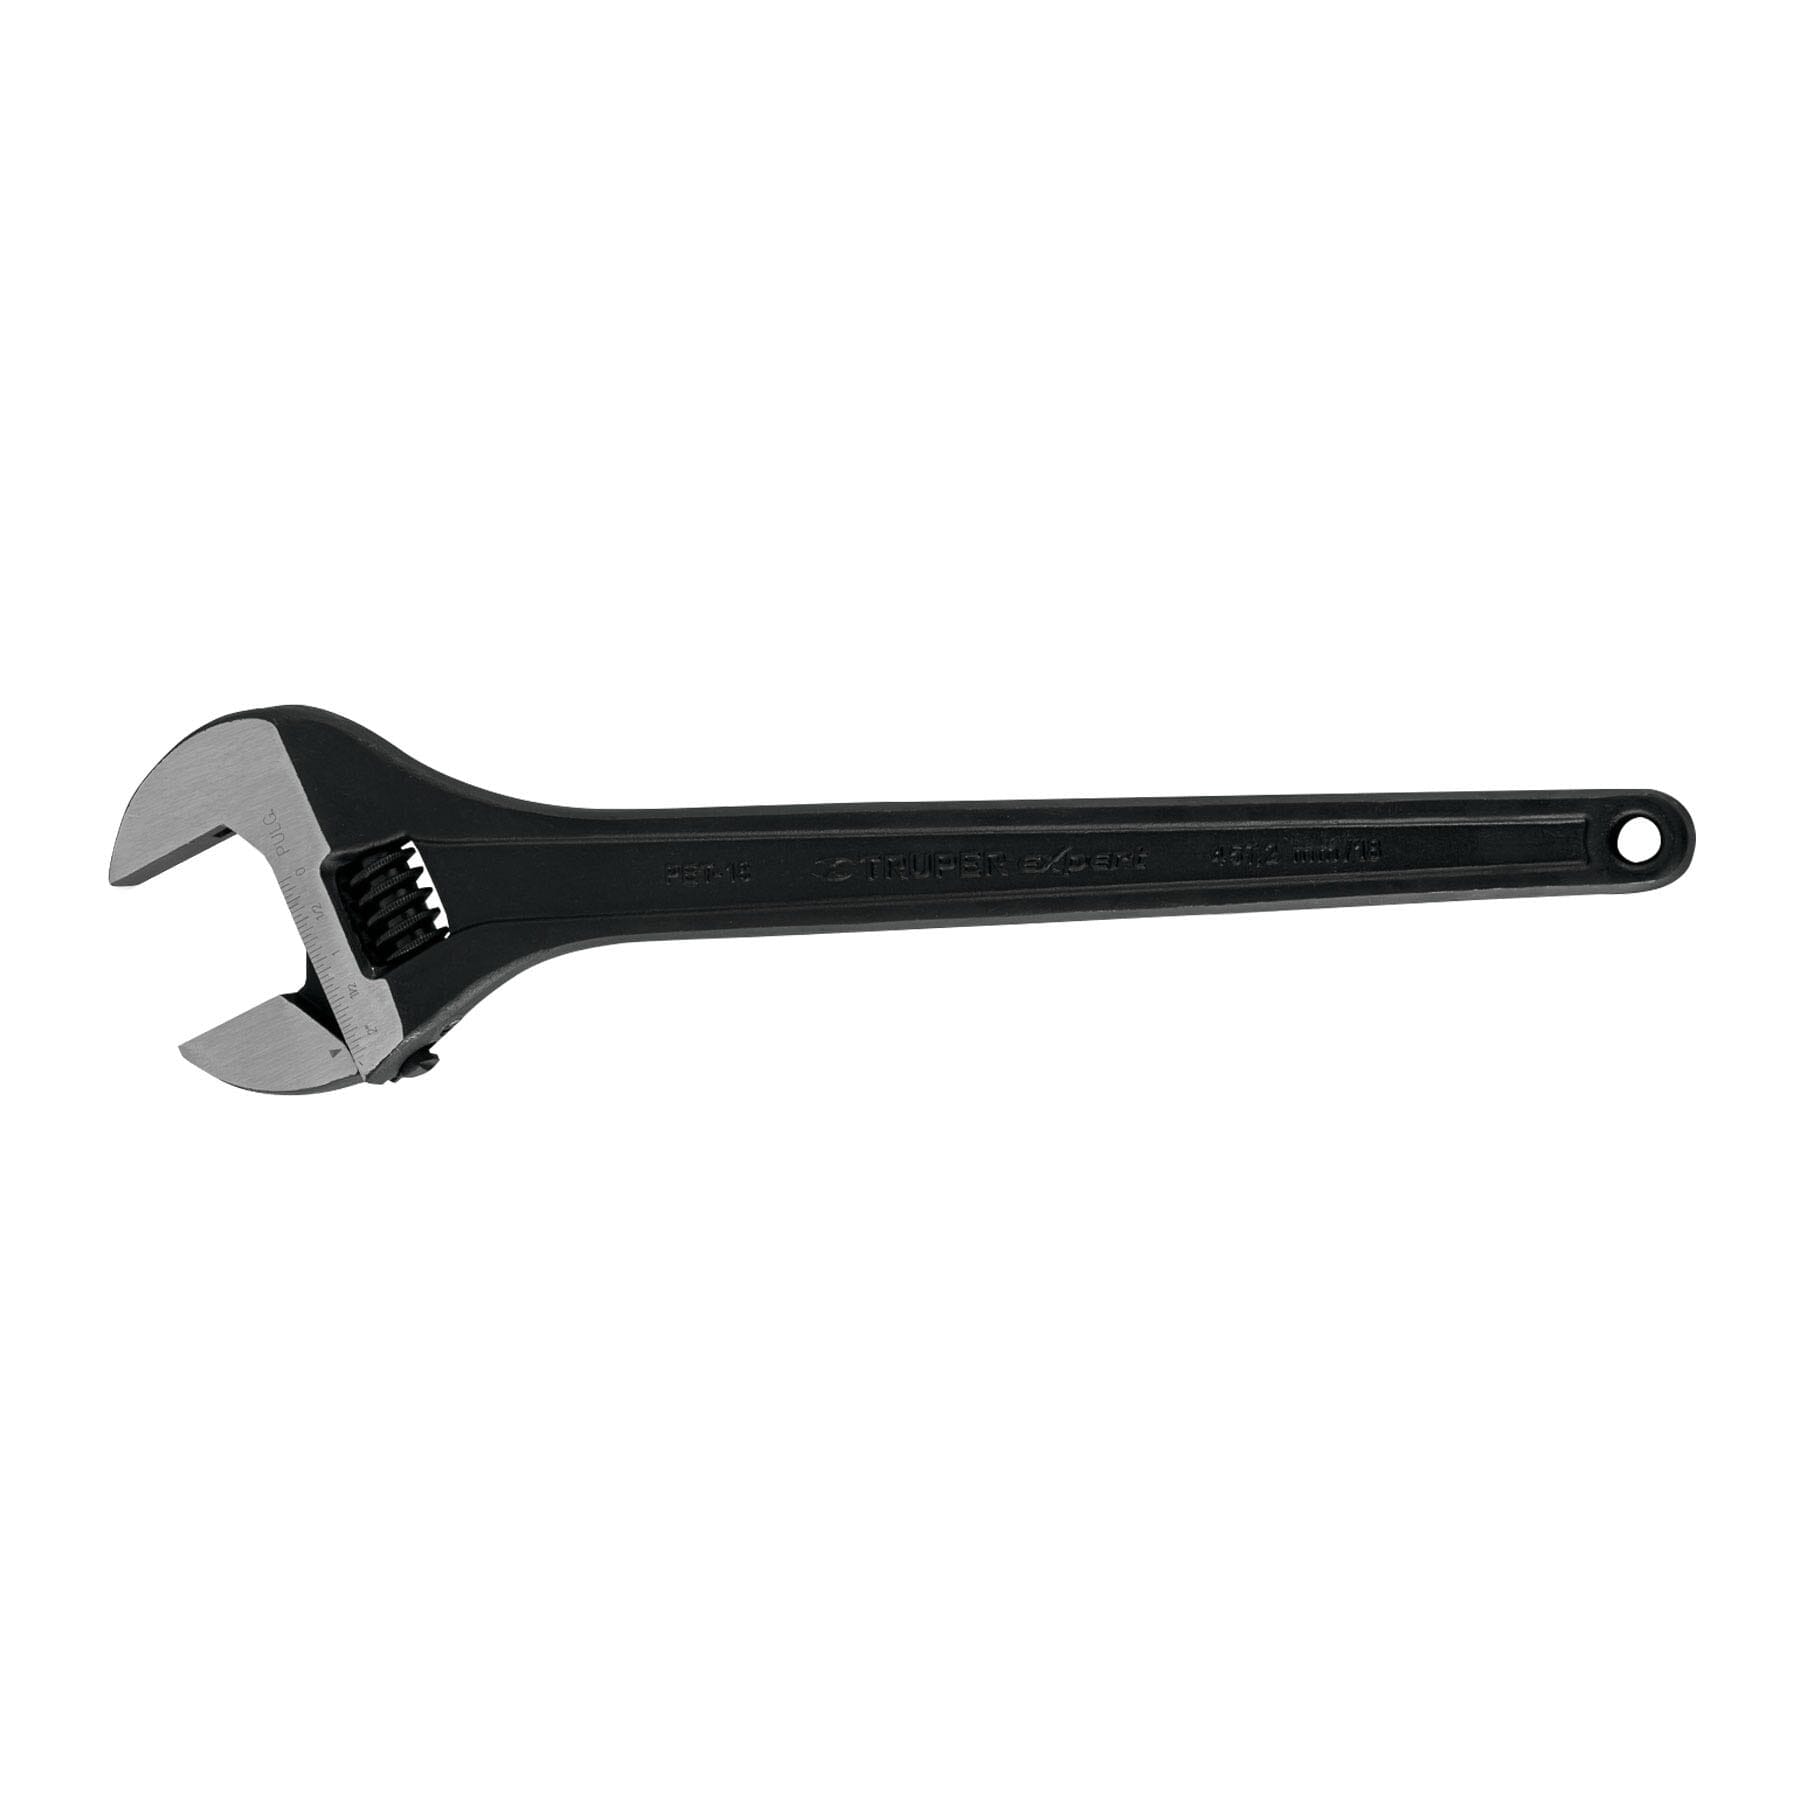 Truper Adjustable Wrench - Black Oxide 450mm